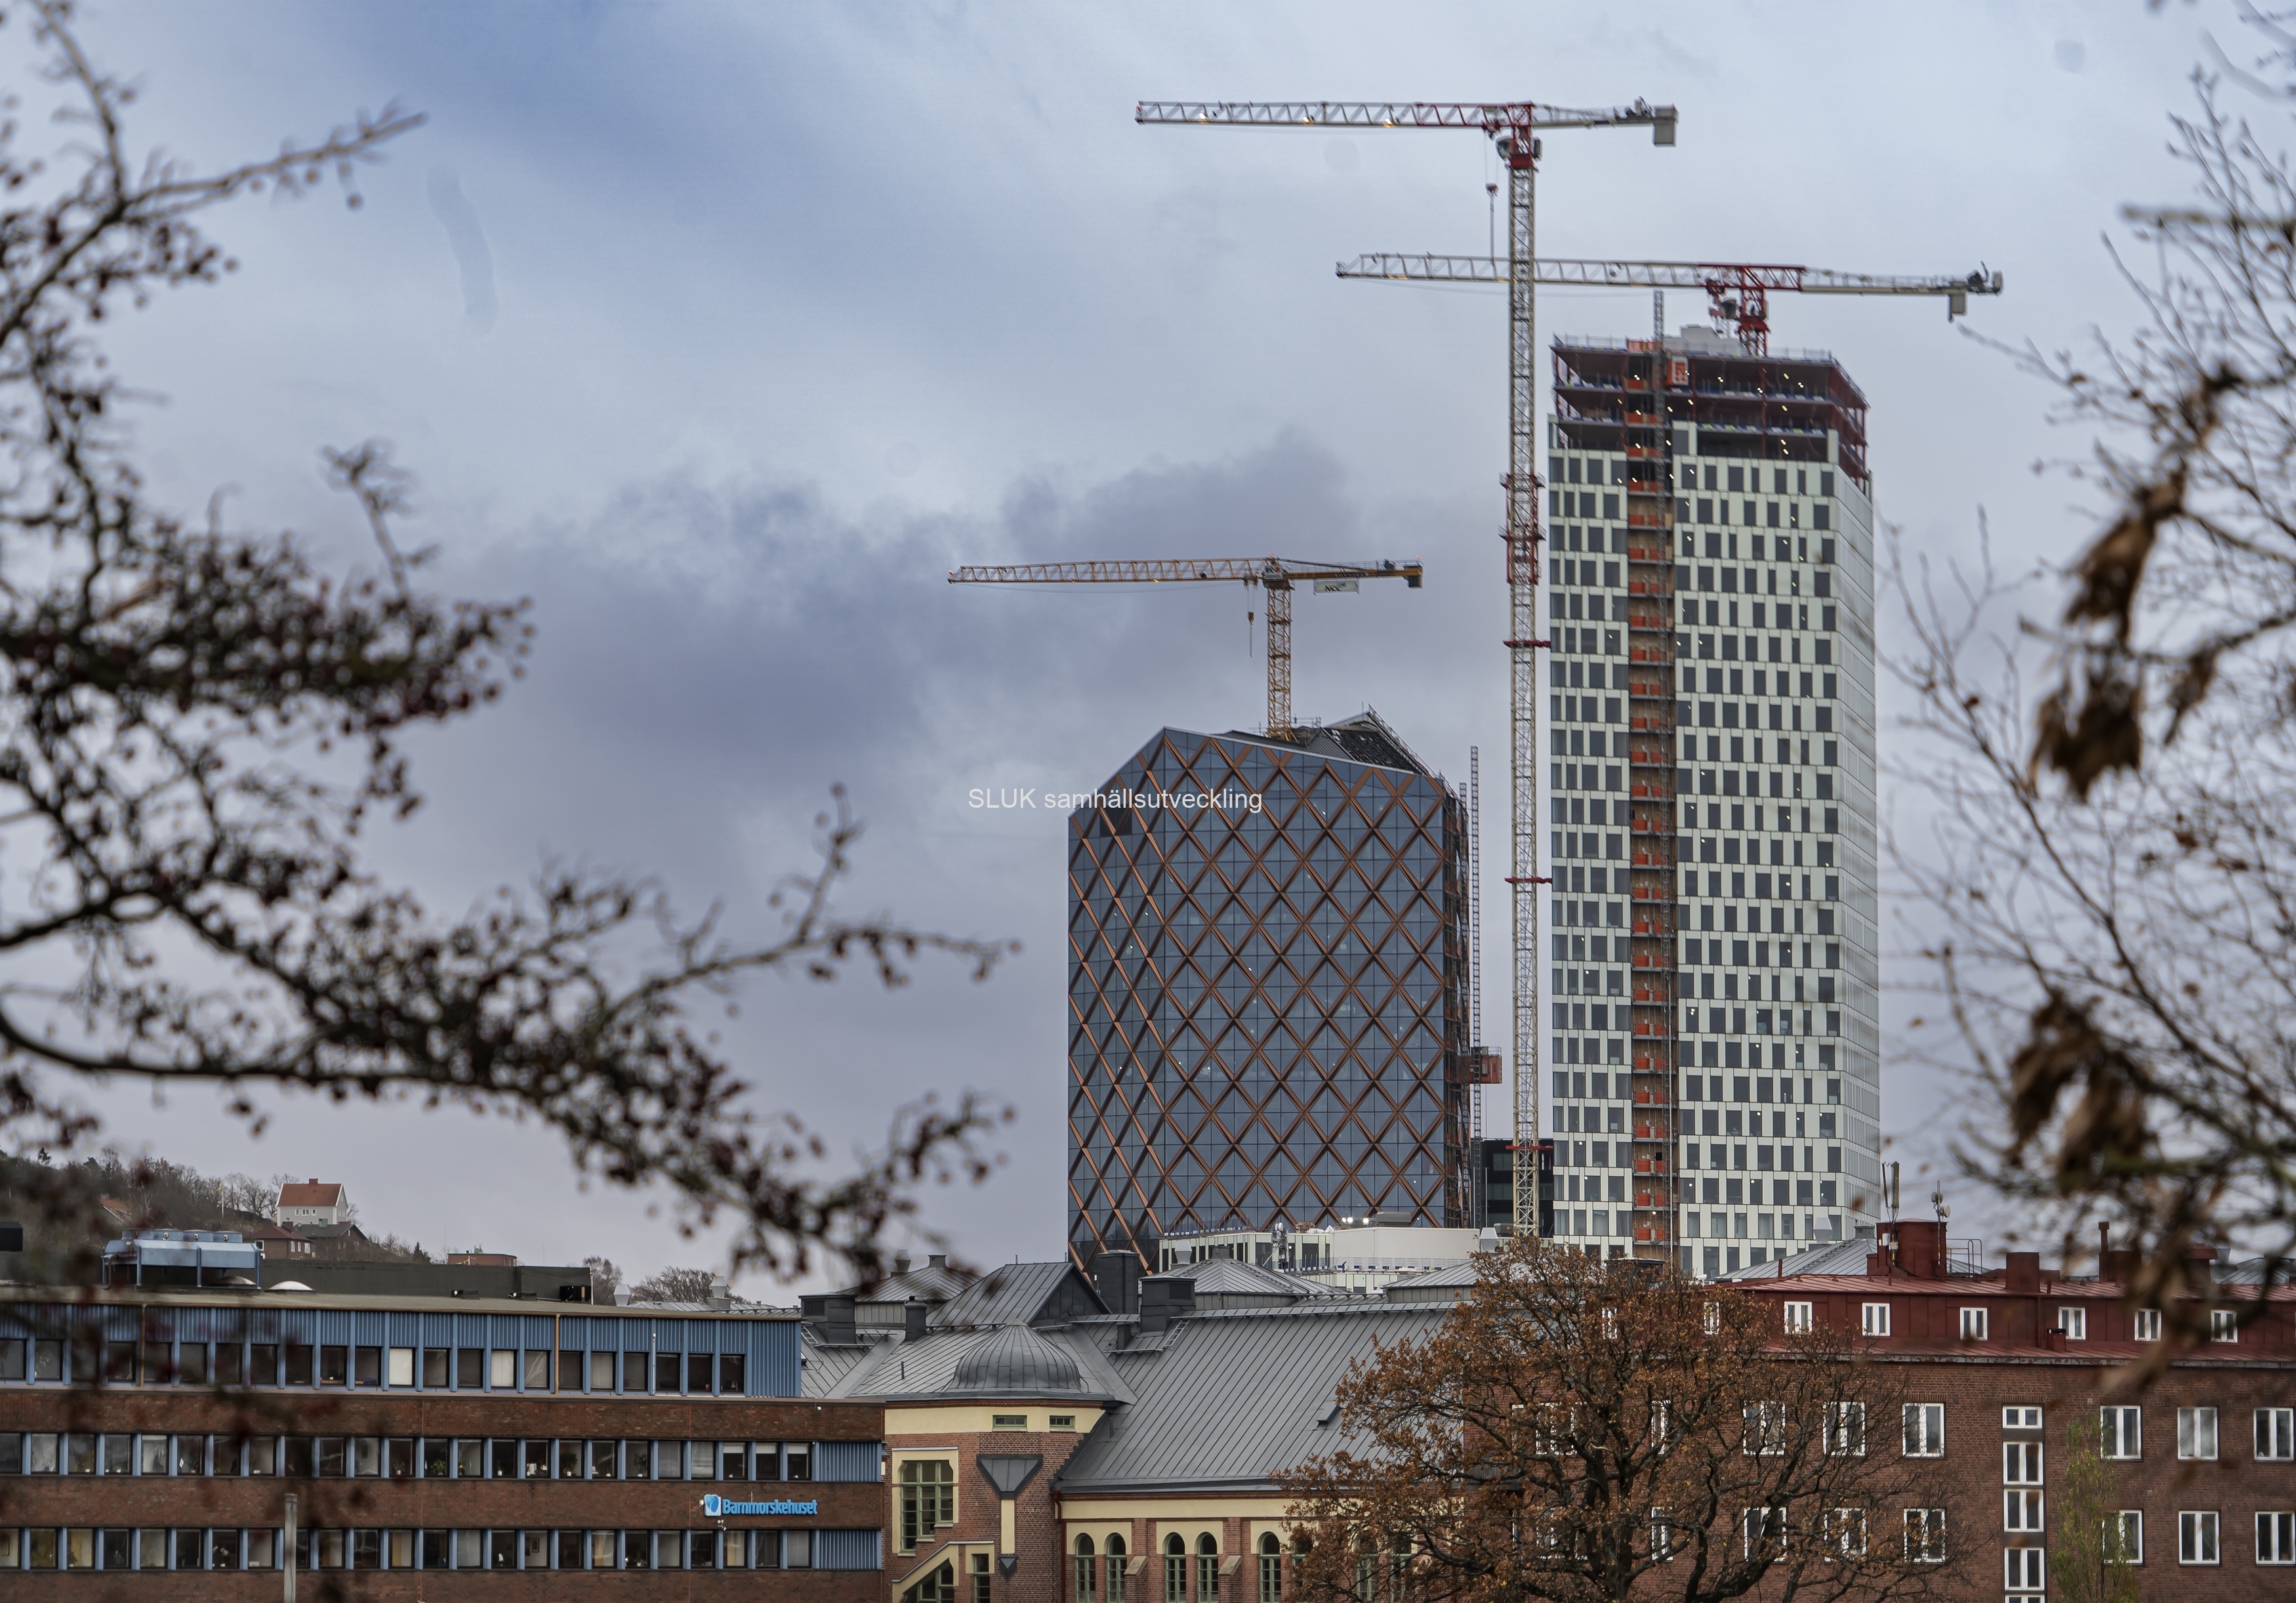 Från Skansen Lejonet kan man se hur Kineum och Nordens högsta kontorshus, Citygate byggs upp mot höjden. Det ska bli 36 våningar, så det är många som saknas ännu.